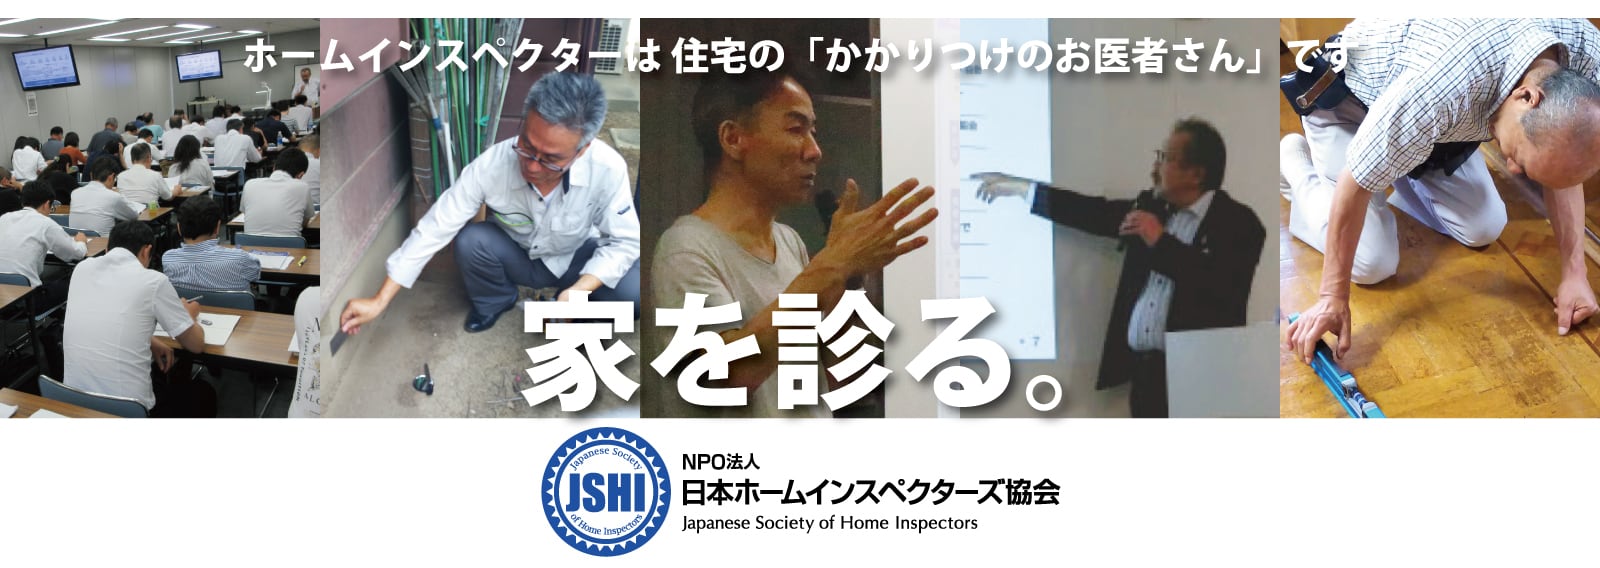 NPO法人 日本ホームインスペクターズ協会